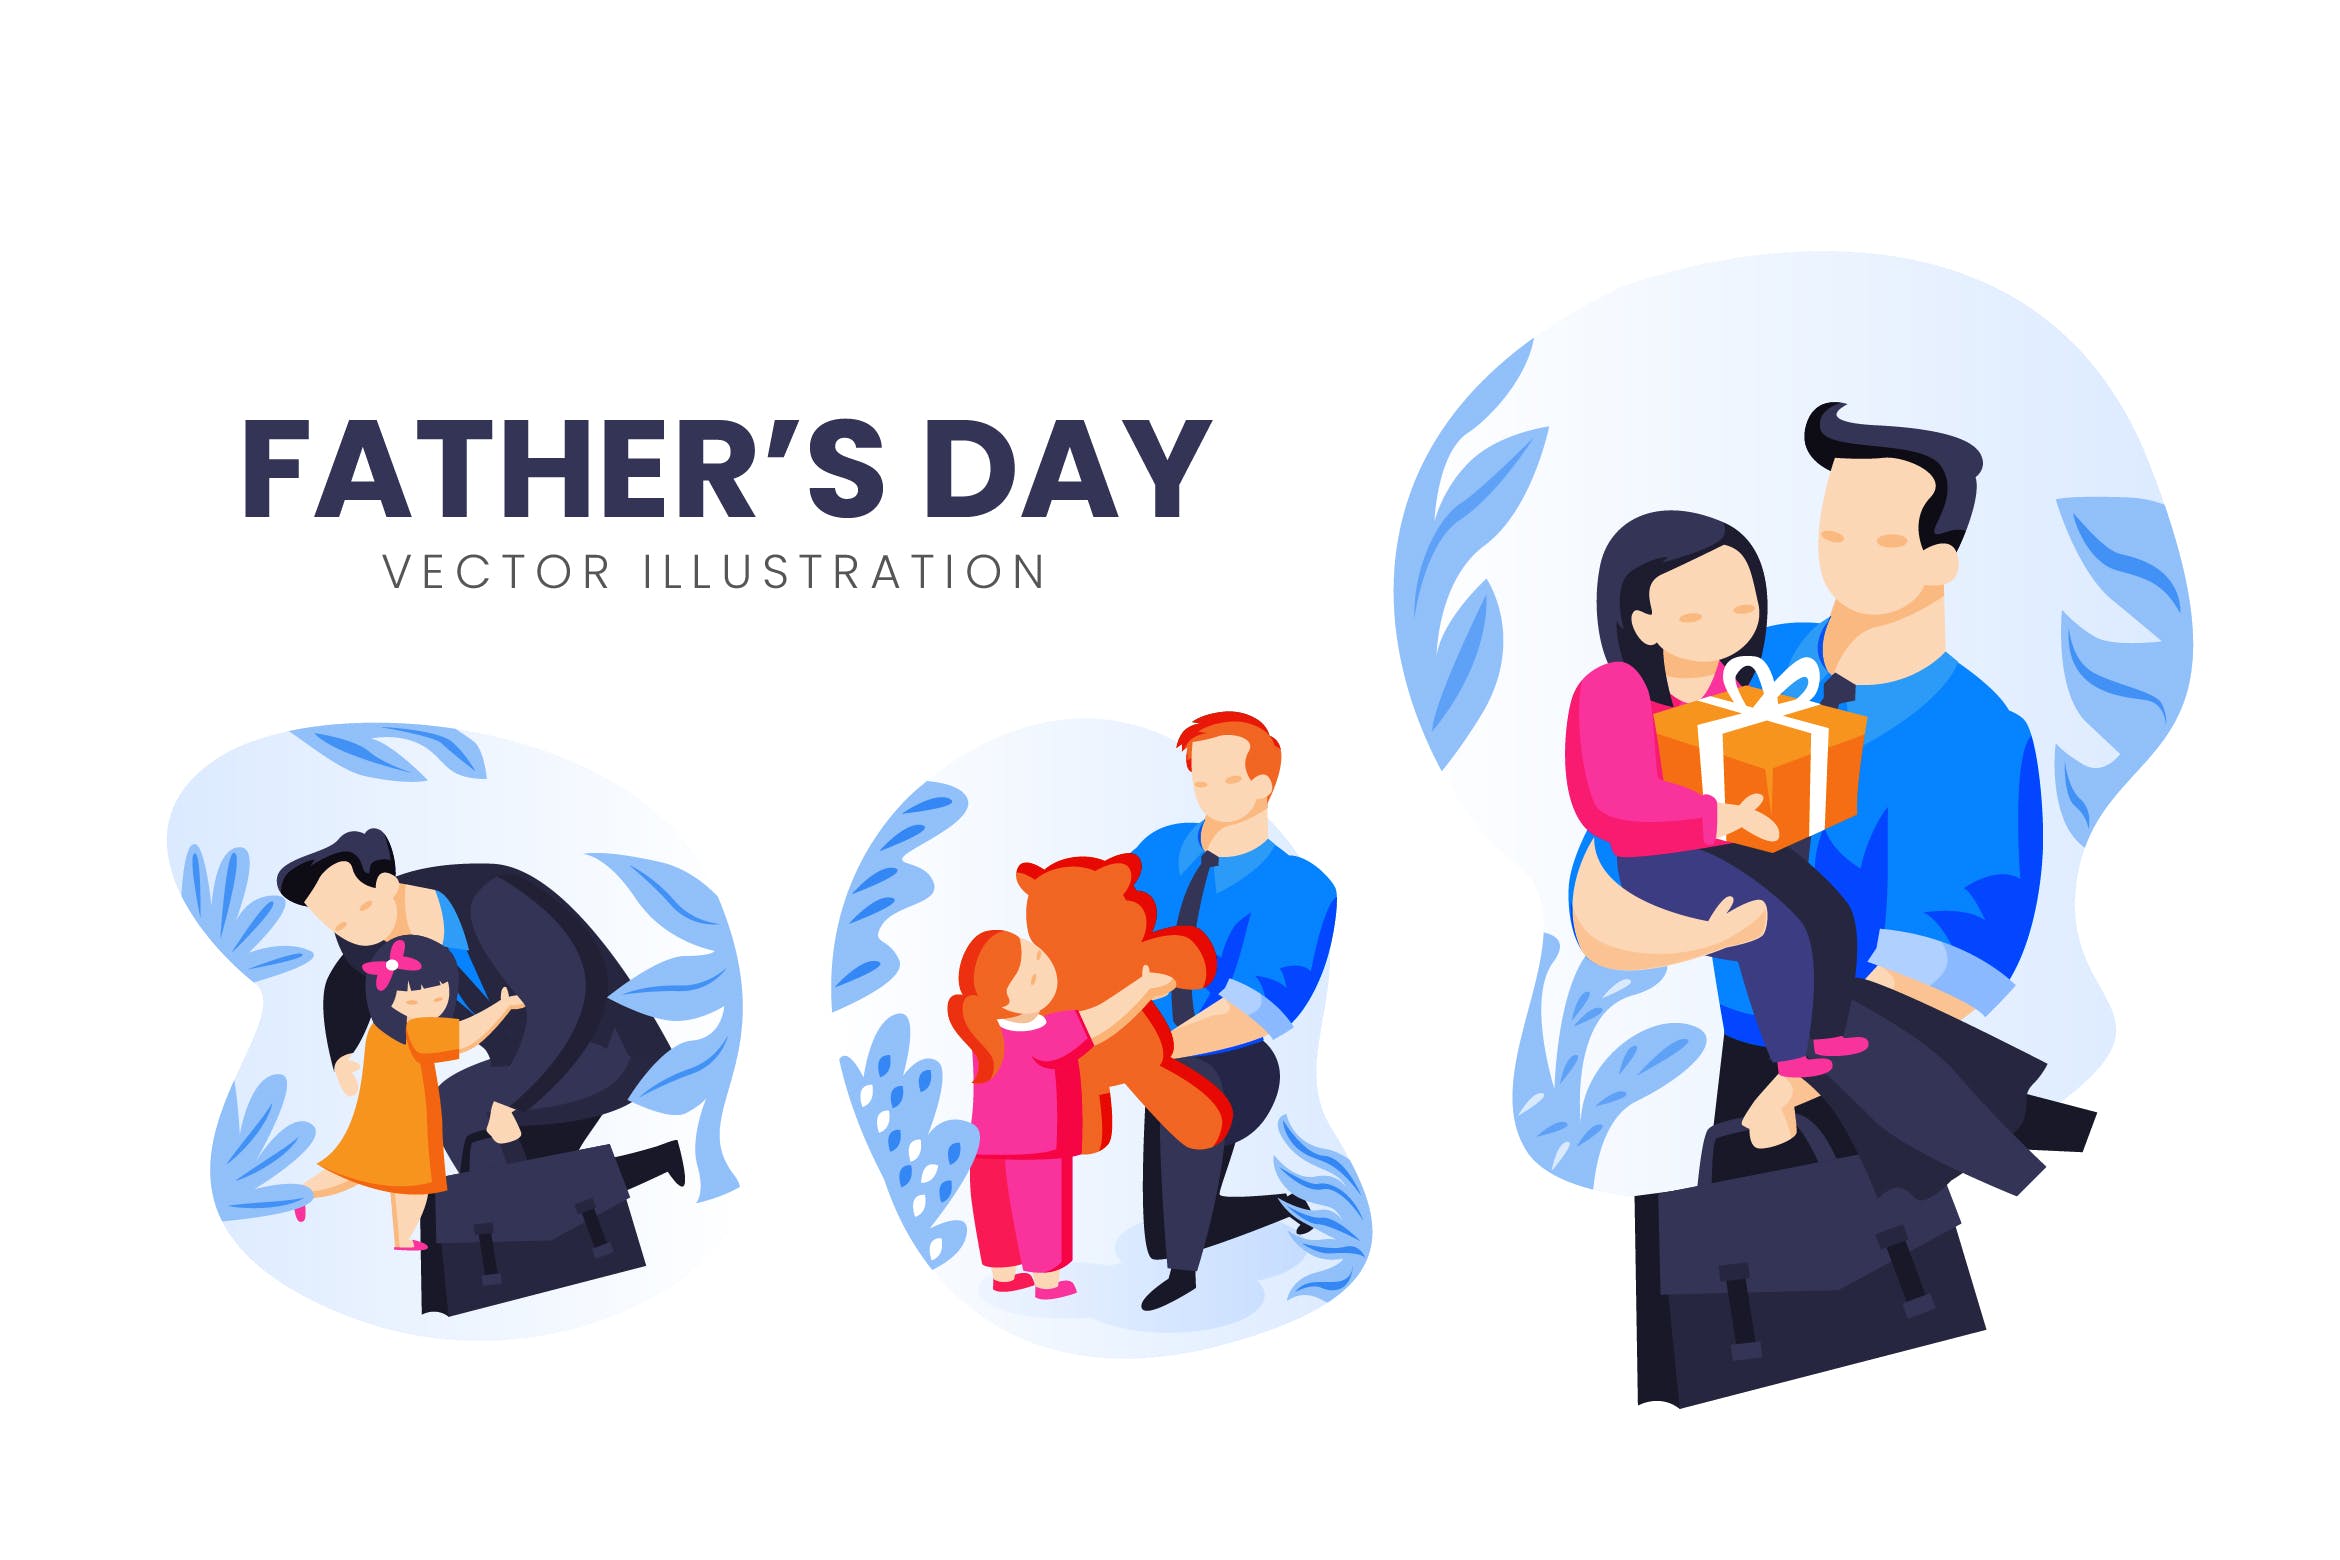 父亲节主题人物形象第一素材精选手绘插画矢量素材 Fathers Day Vector Character Set插图